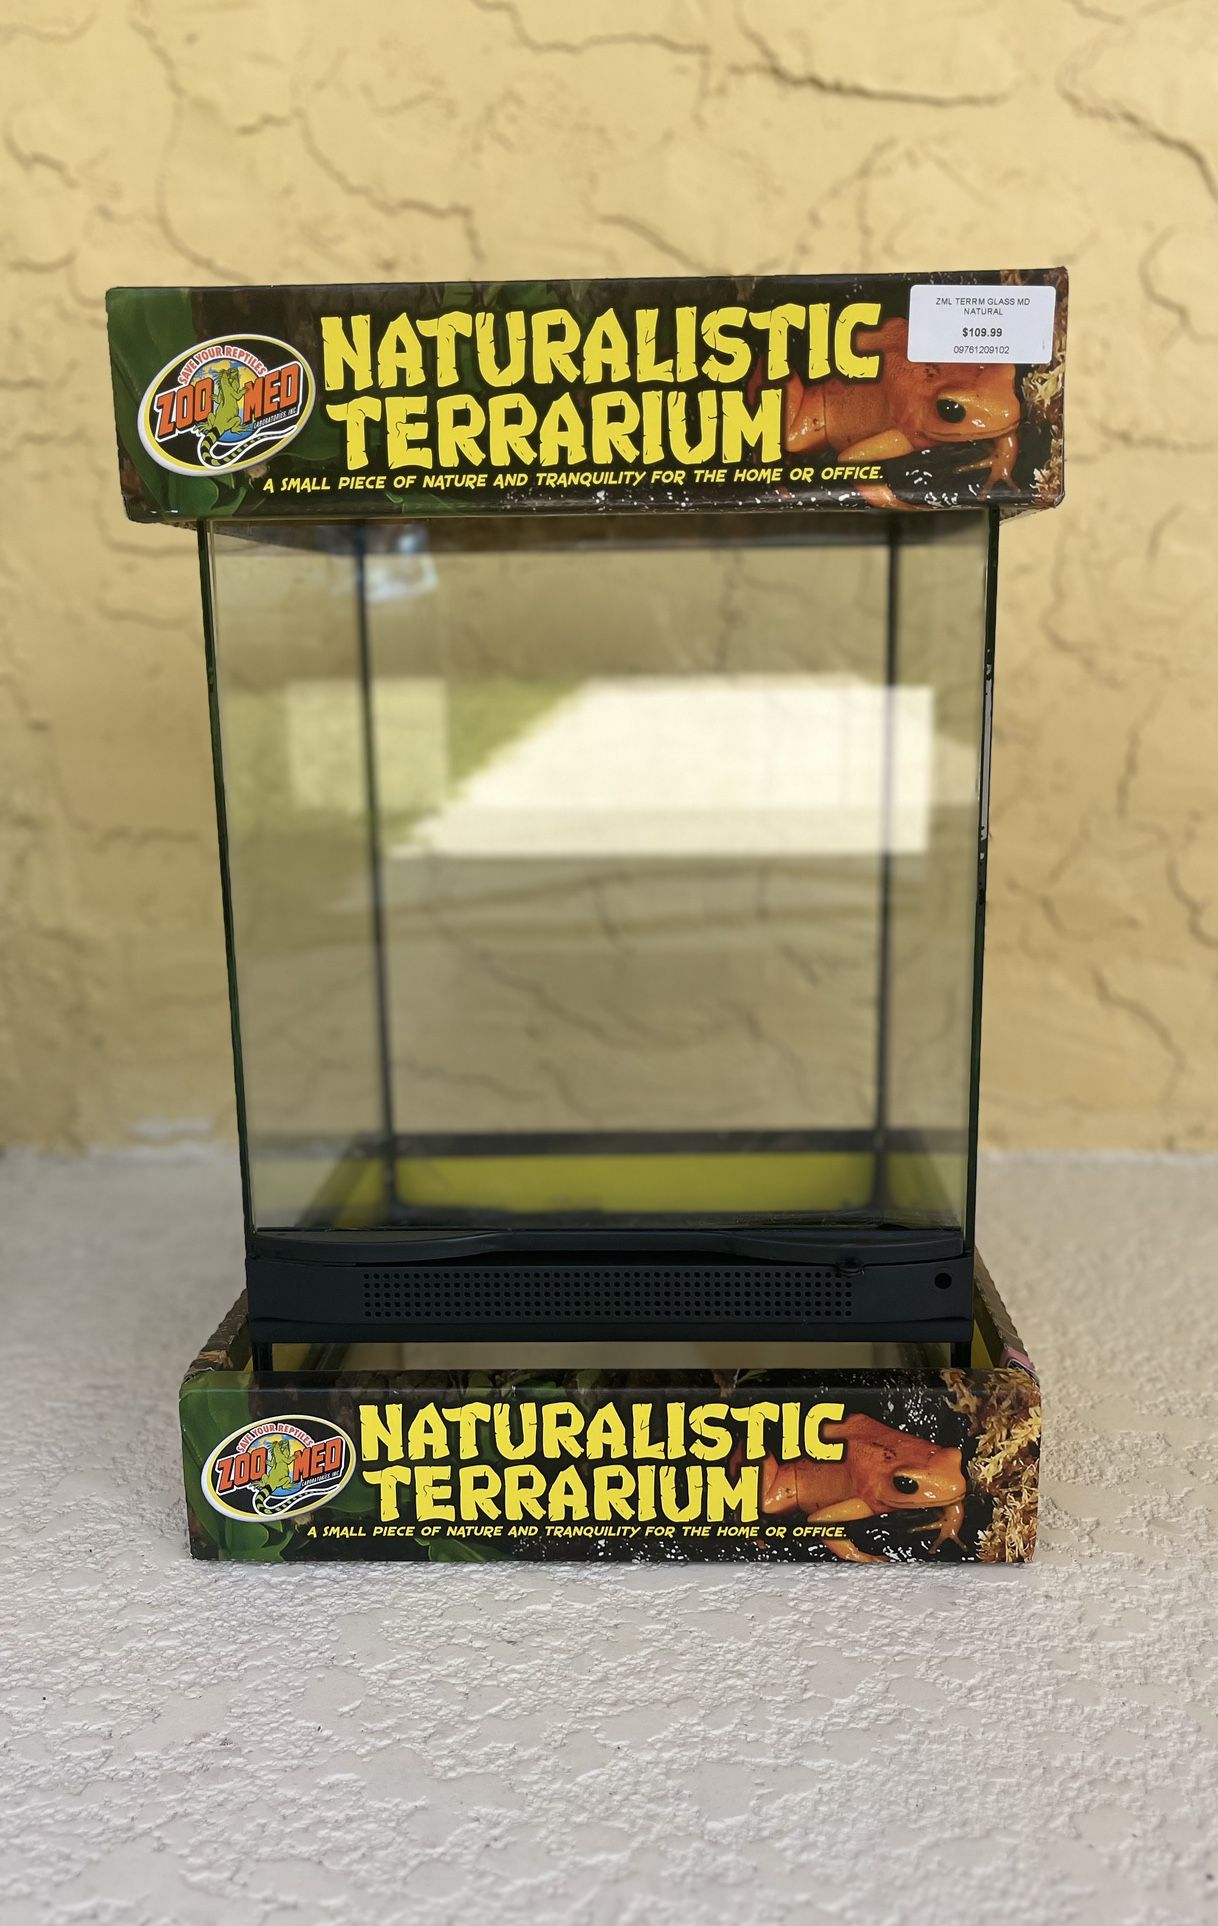 Reptile Terrarium 